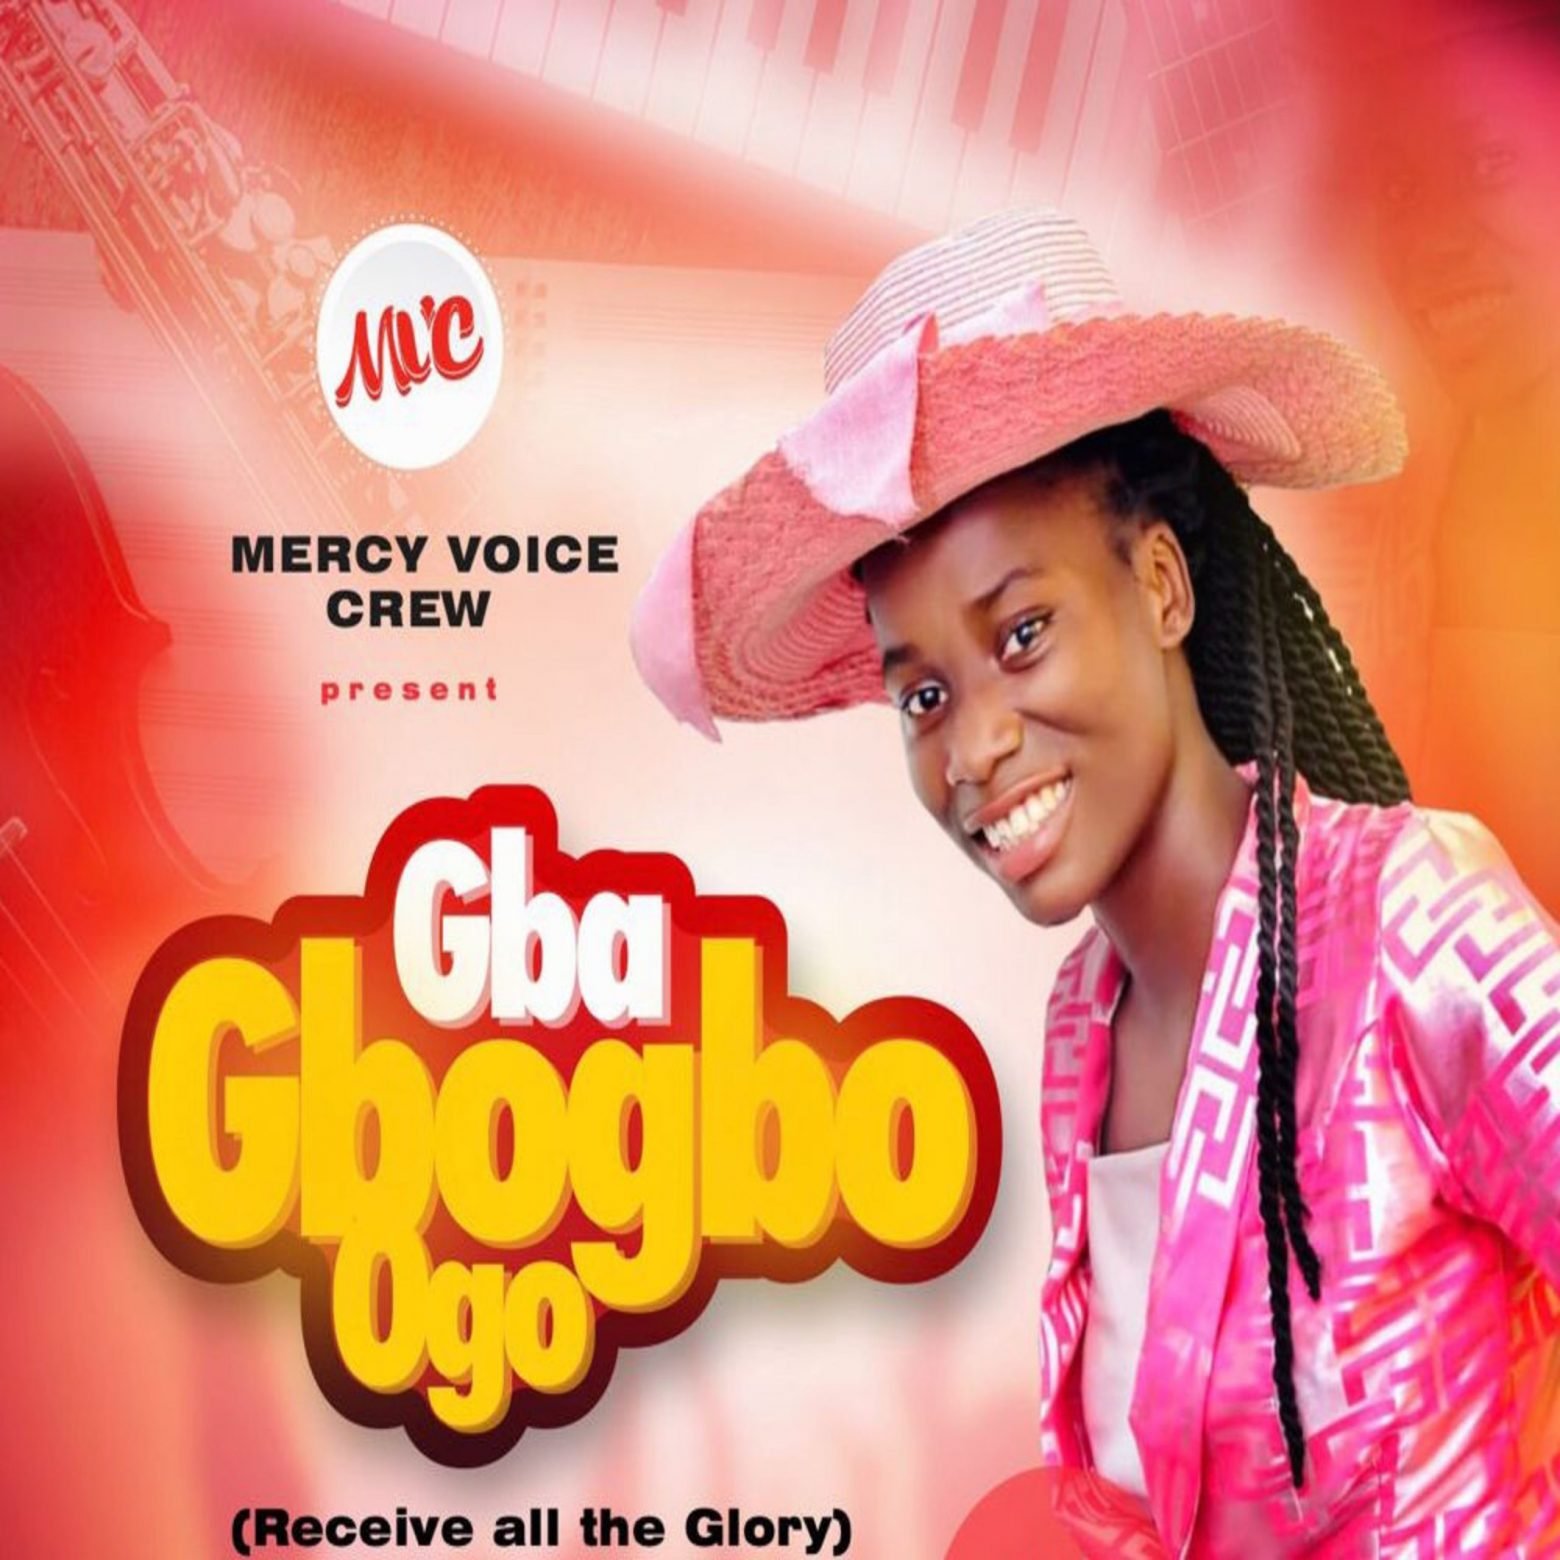 Mercy Voice Crew - Gba Gbogbo Ogo